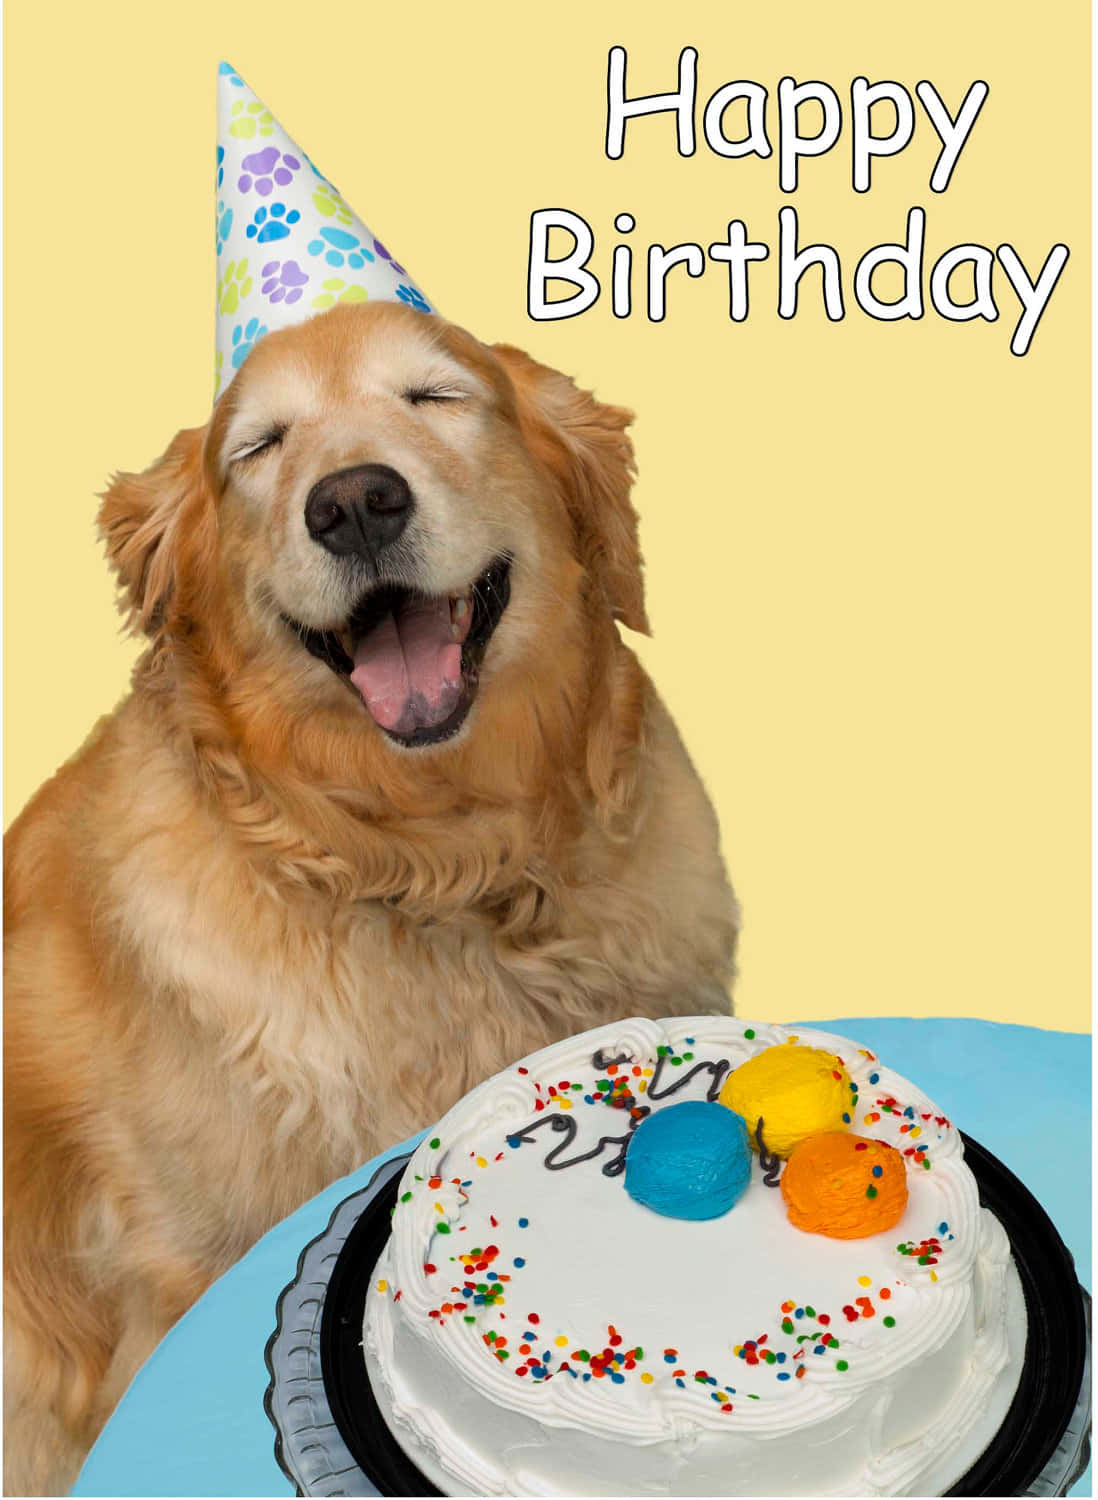 Imagende Un Perro Golden Retriever Sonriendo En Una Fiesta De Cumpleaños Con Pastel